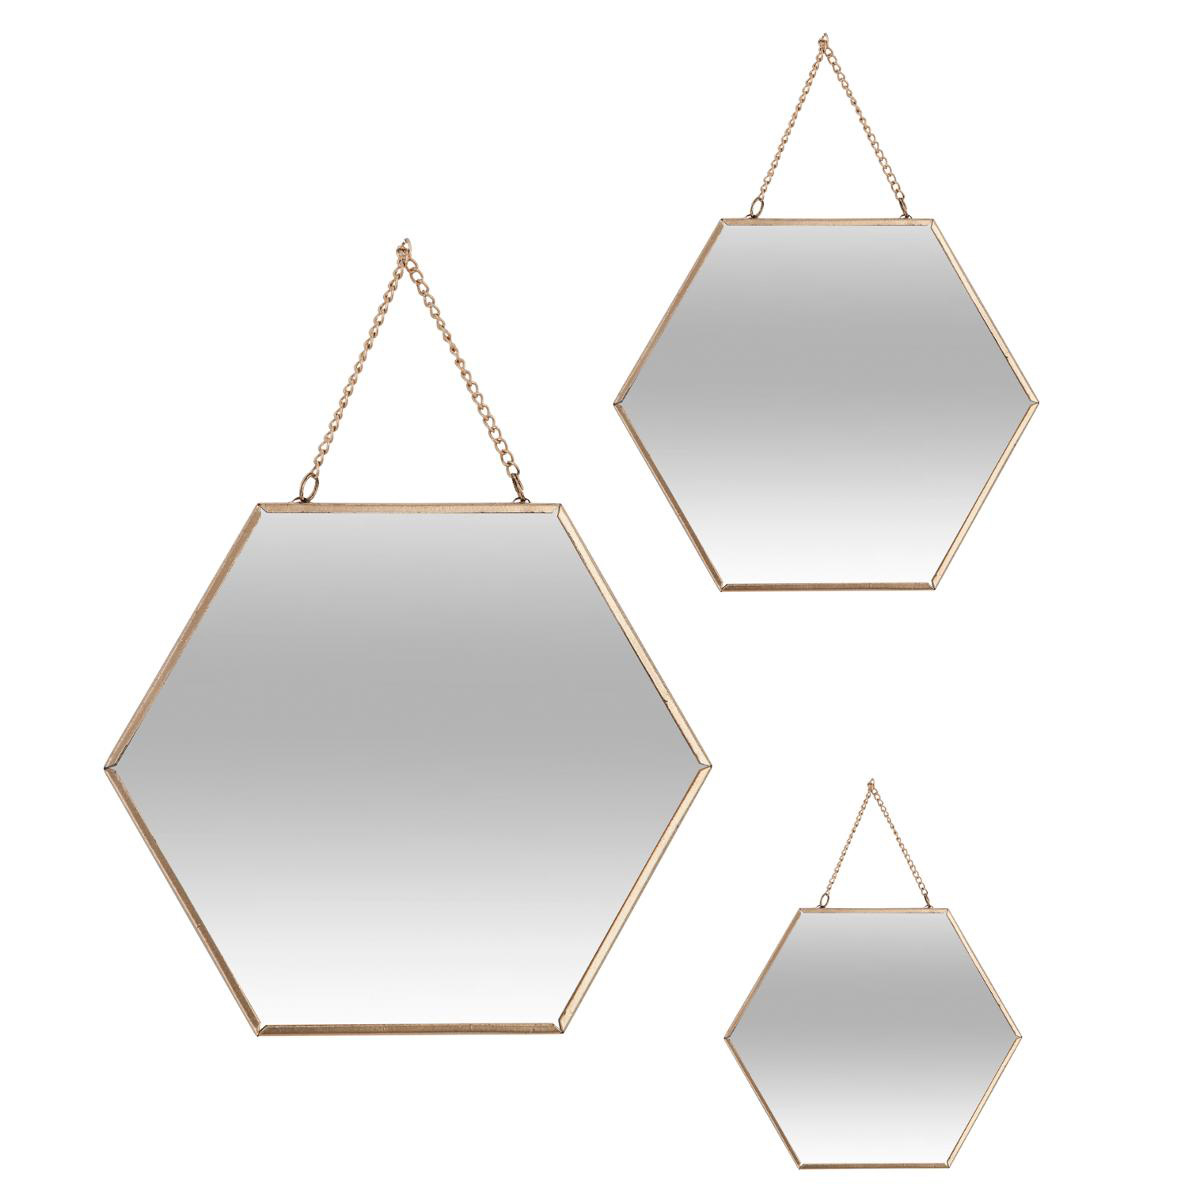 Διακοσμητικοί Καθρέφτες Τοίχου (Σετ 3τμχ) A-S Gold 141196A 175009